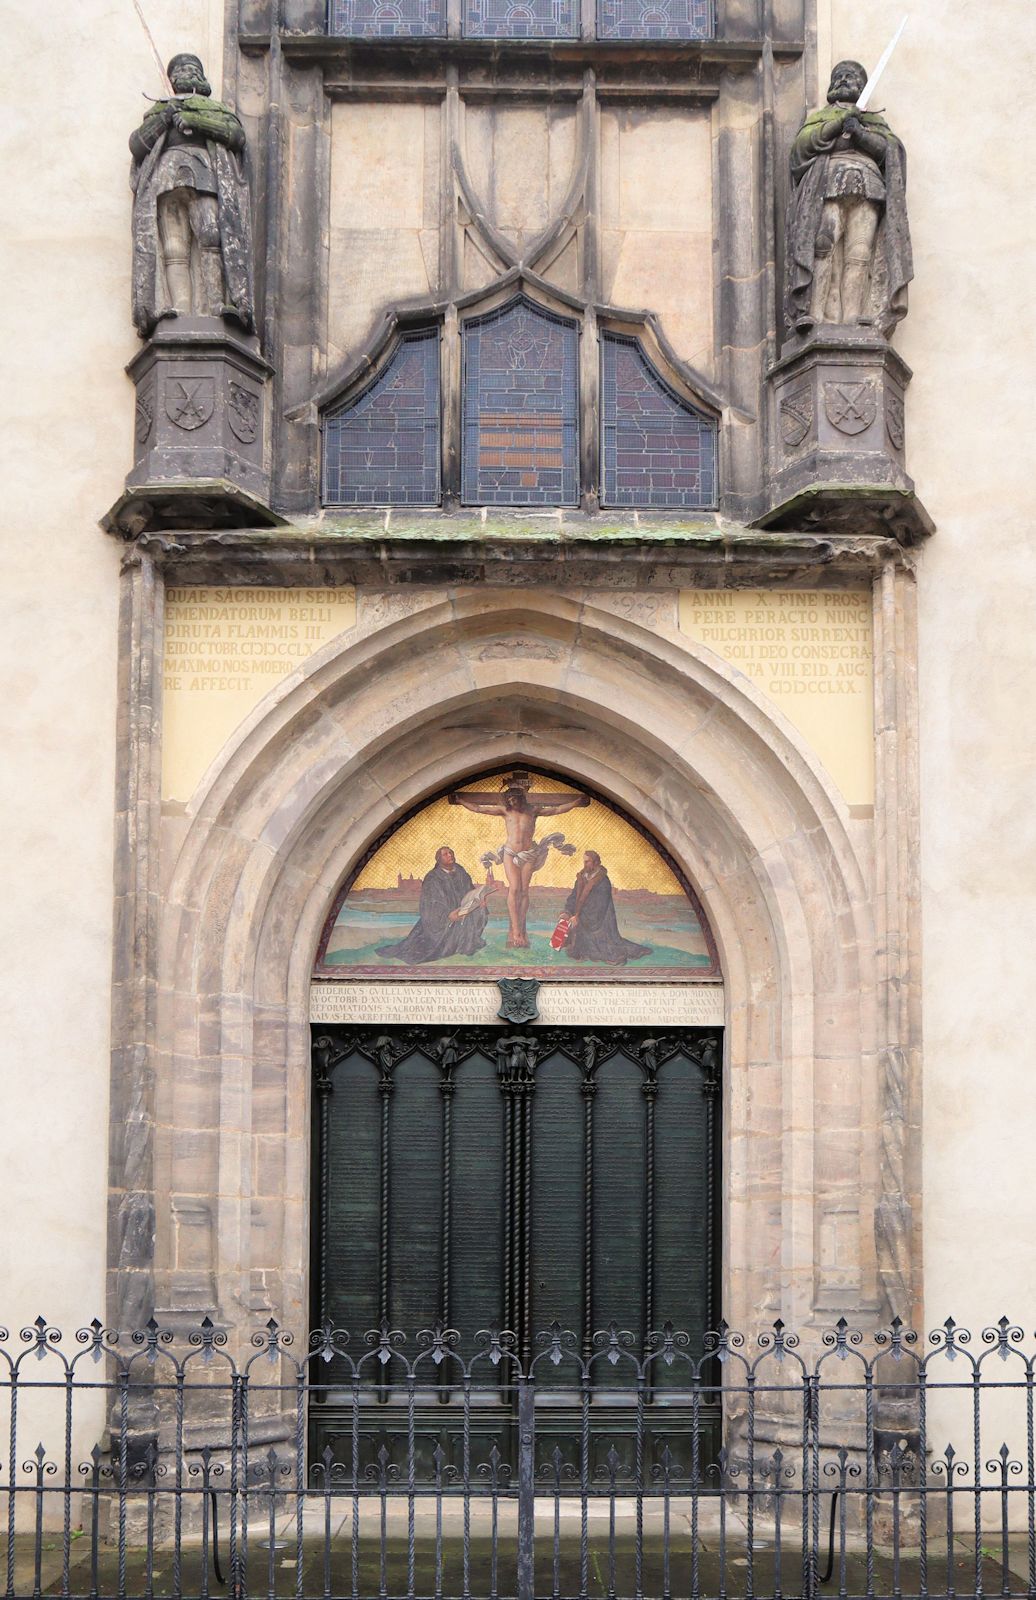 Die Tür der Schlosskirche in Wittenberg, an der Martin Luther - der Überlieferung zufolge - seine Thesen anschlug. Die originale Holztür ging 1760 bei einem Brand verloren; 1858 stiftete der preußische König Friederich Wilhelm IV. die heutige Bronzetür, auf der die 95 Thesen im Relief dargestellt sind.